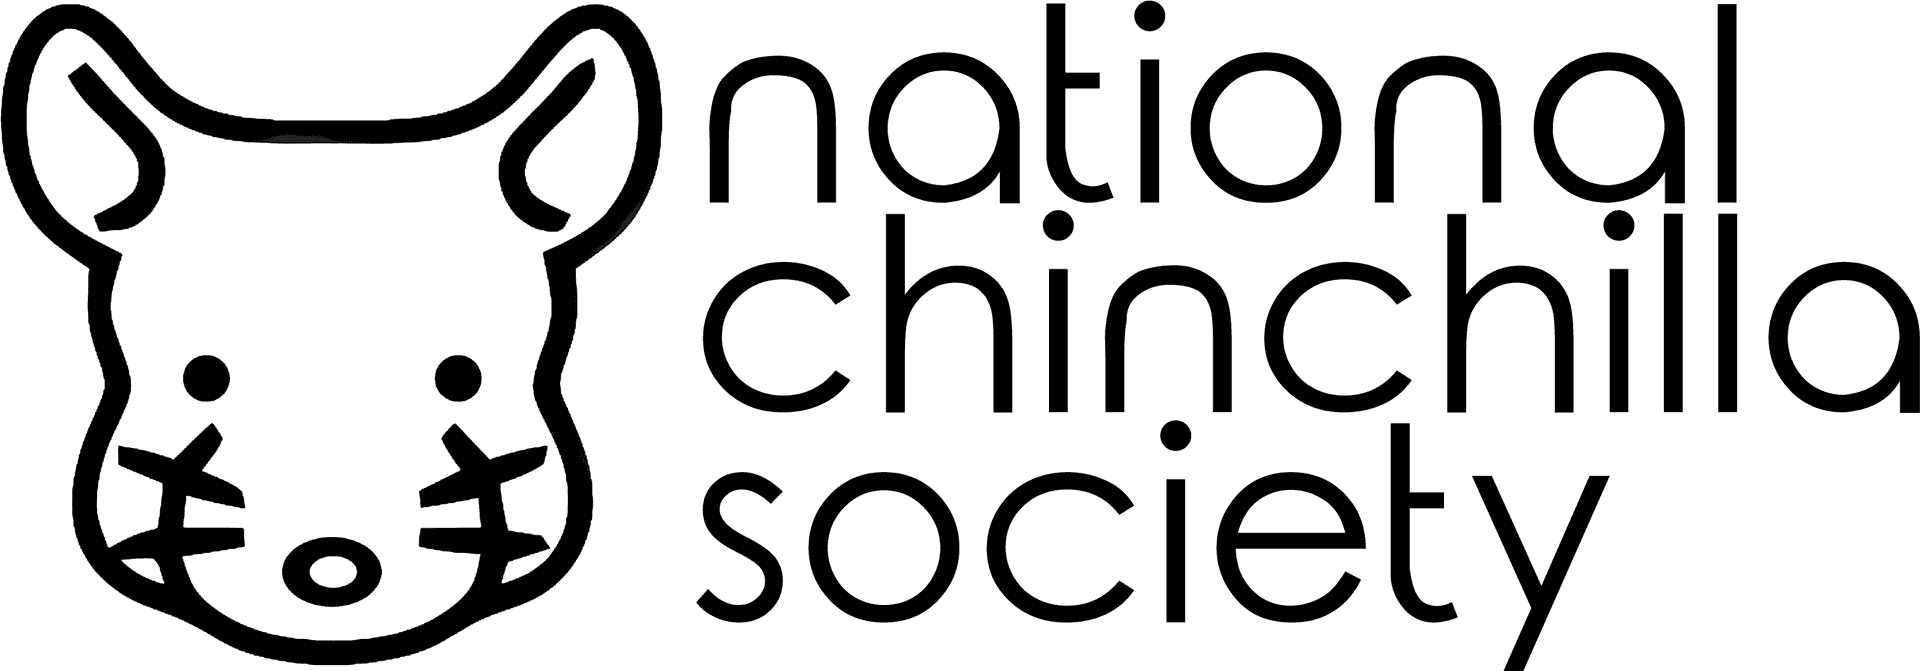 National Chinchilla Society Logo PNG image